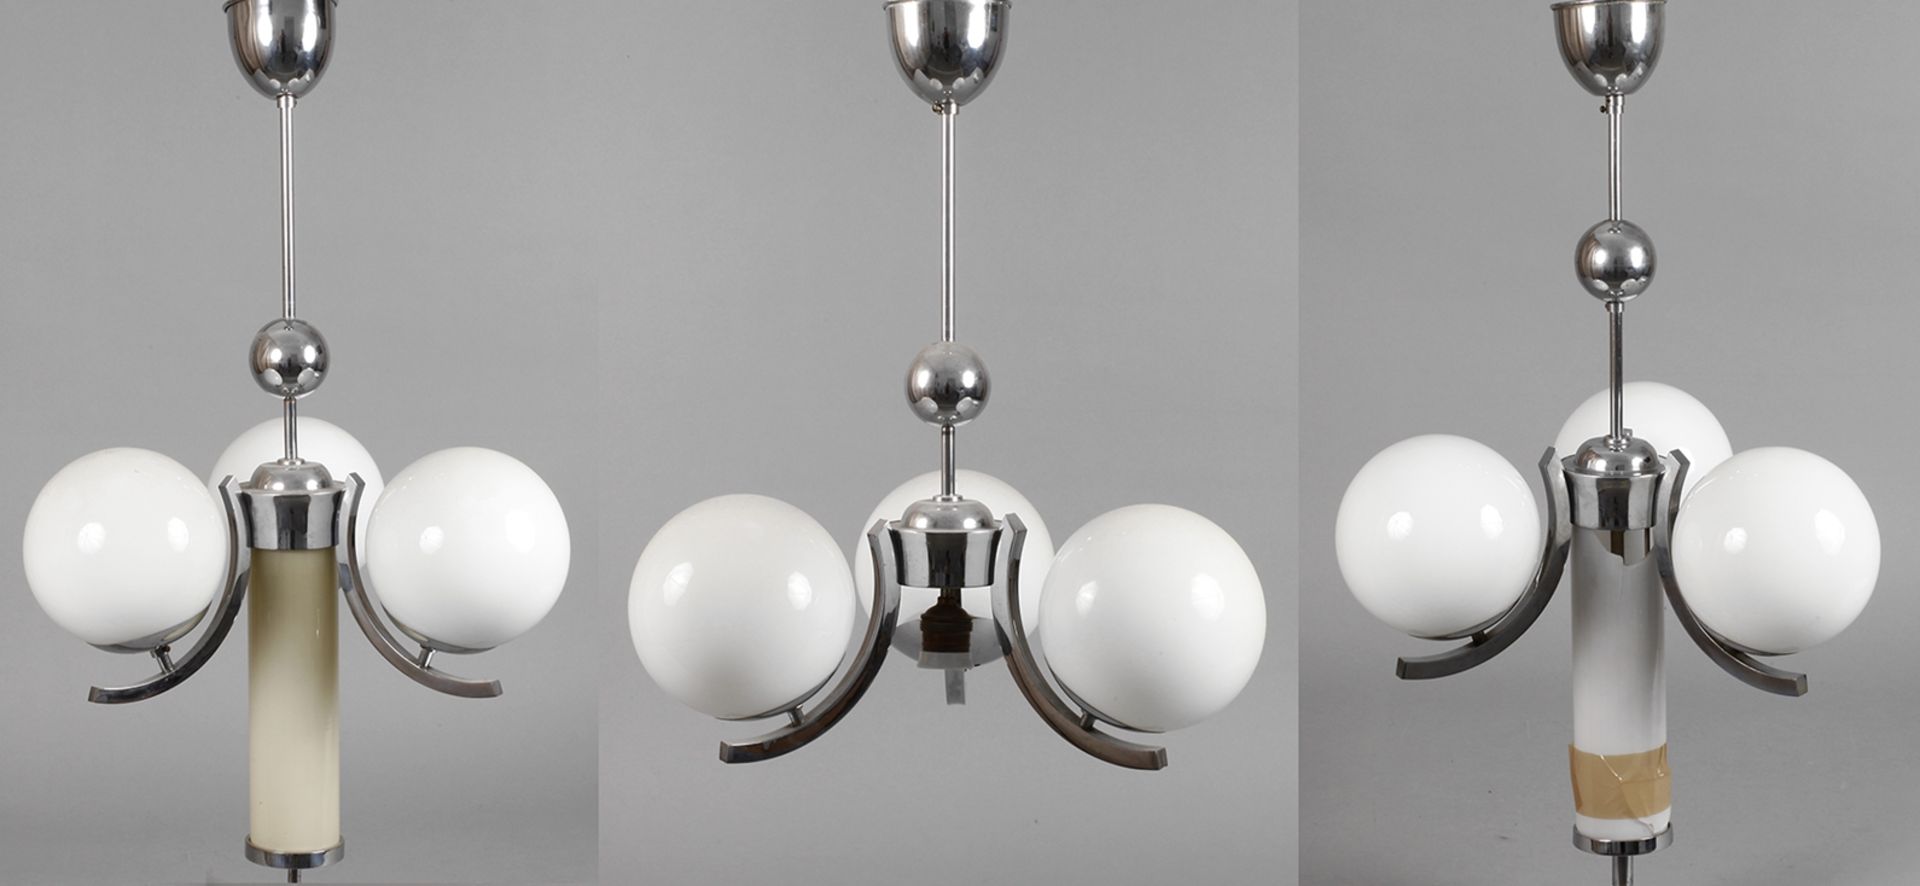 Drei Deckenlampen Art déco1920er Jahre, verchromte Metallgestänge mit jeweils drei kurzen, c-